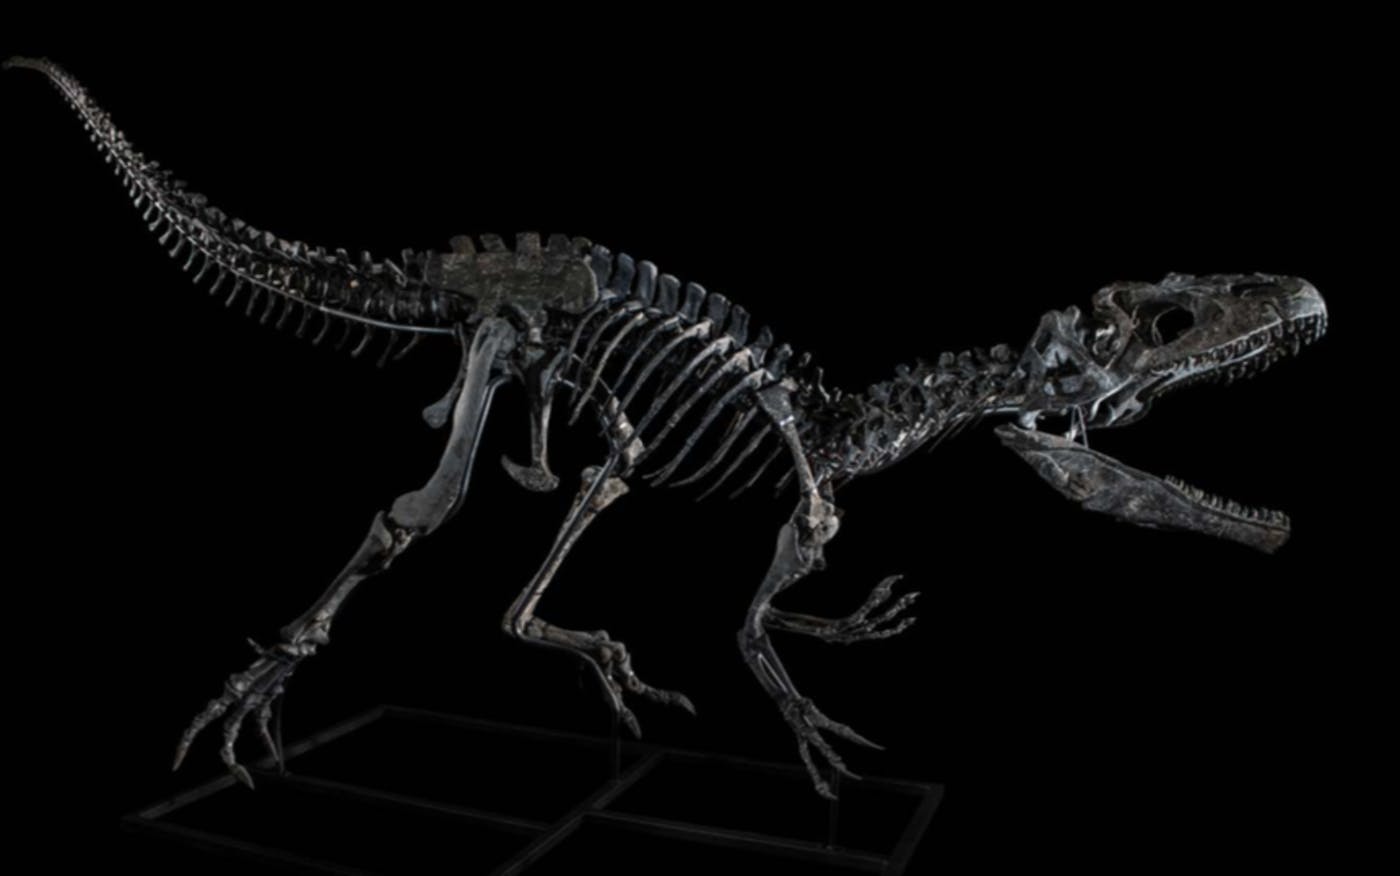 Dinosaur Skeletons for sale in Paris this week